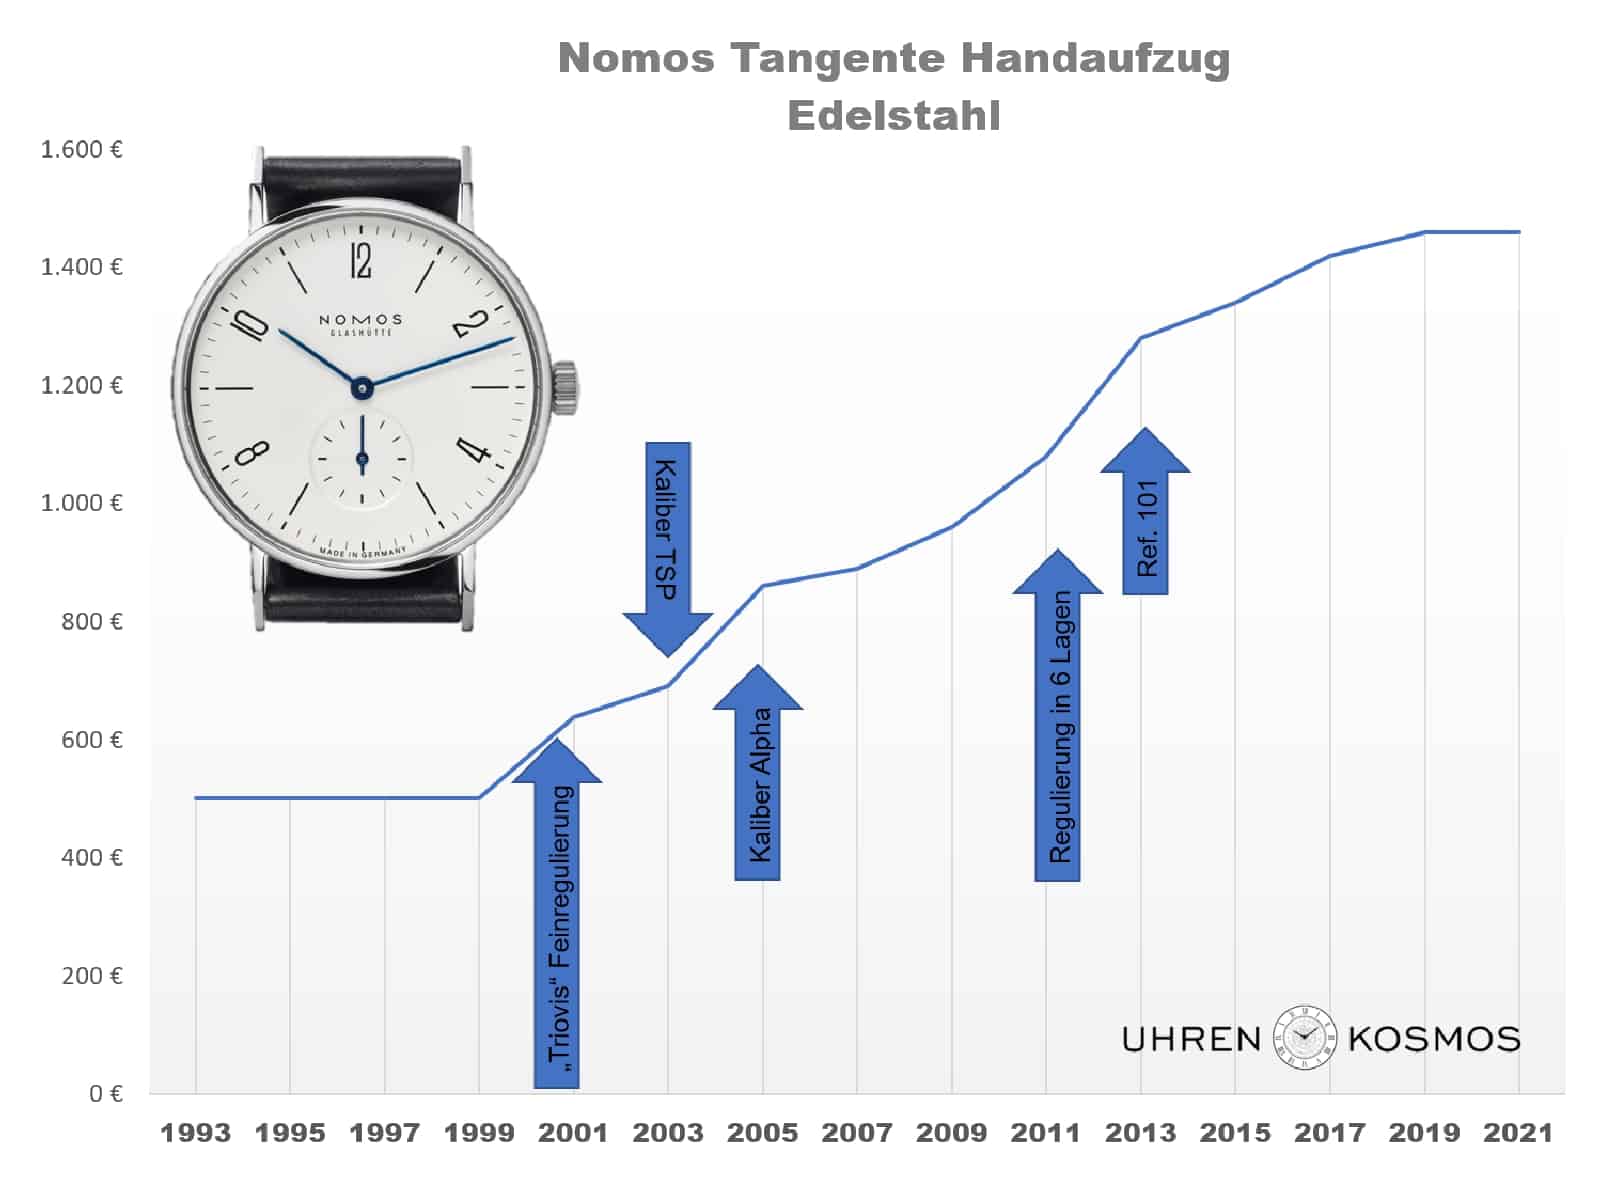 Handaufzugs-Tangente Preisentwicklung von 1993 bis 2021